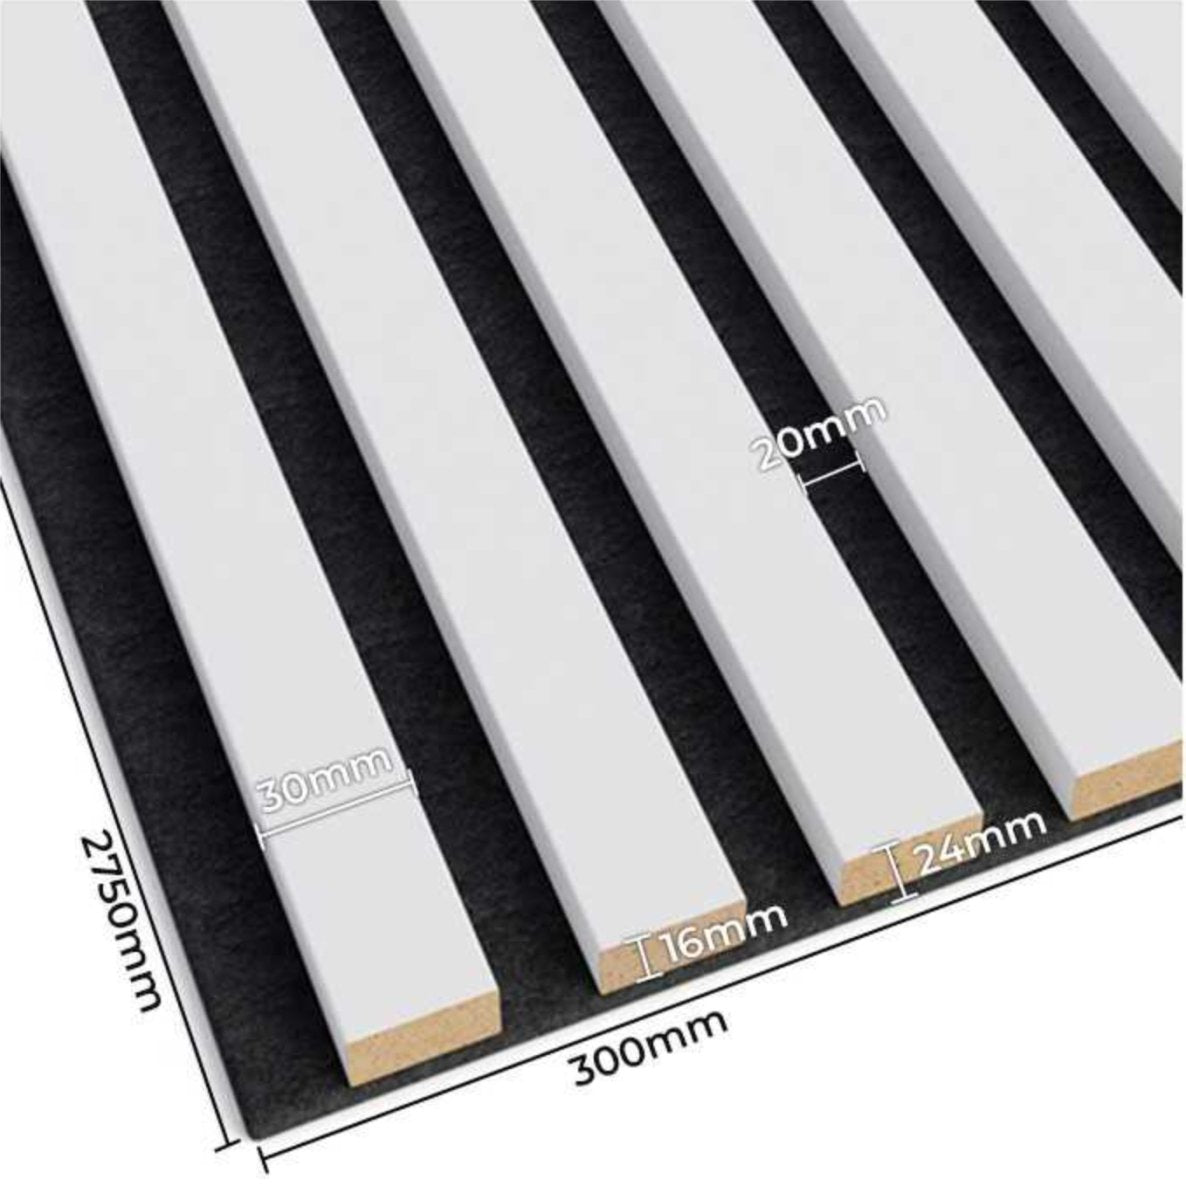 Panel Acústico/ Placa Acústica Liso Color Blanco 50x50 3,5cm